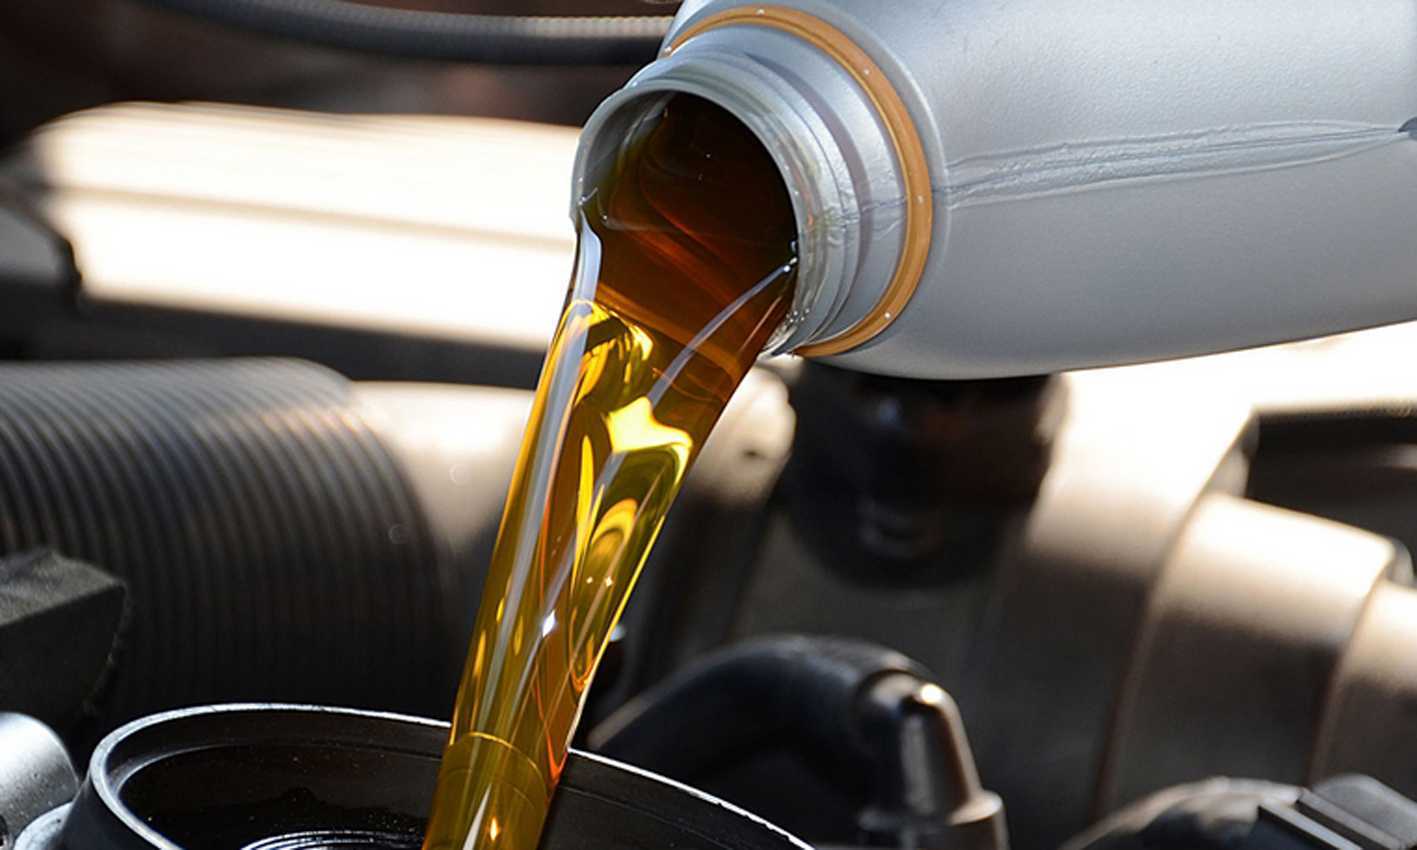 Замена масла в двигателе: когда и как менять масло